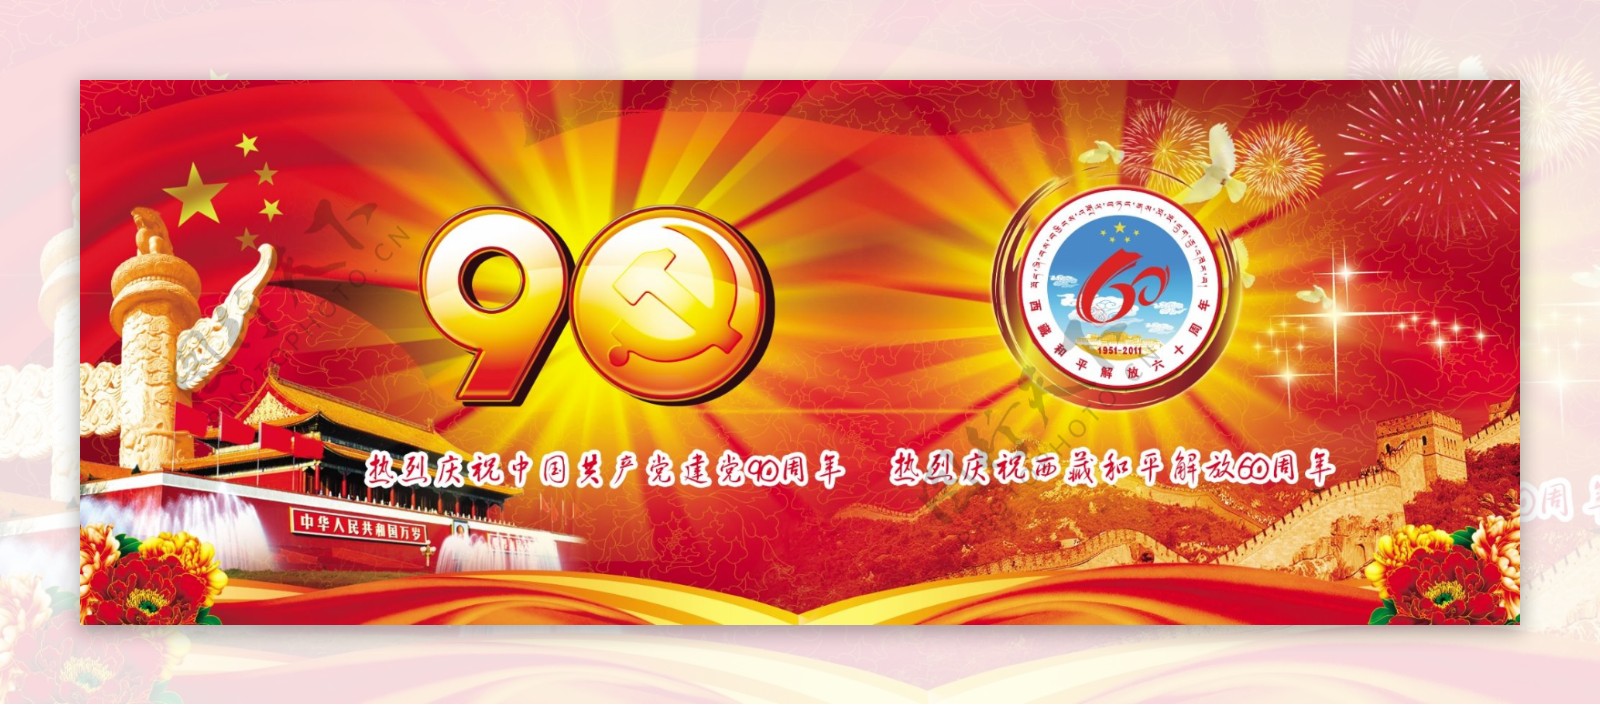 建党90周年暨西藏和平解放60周年